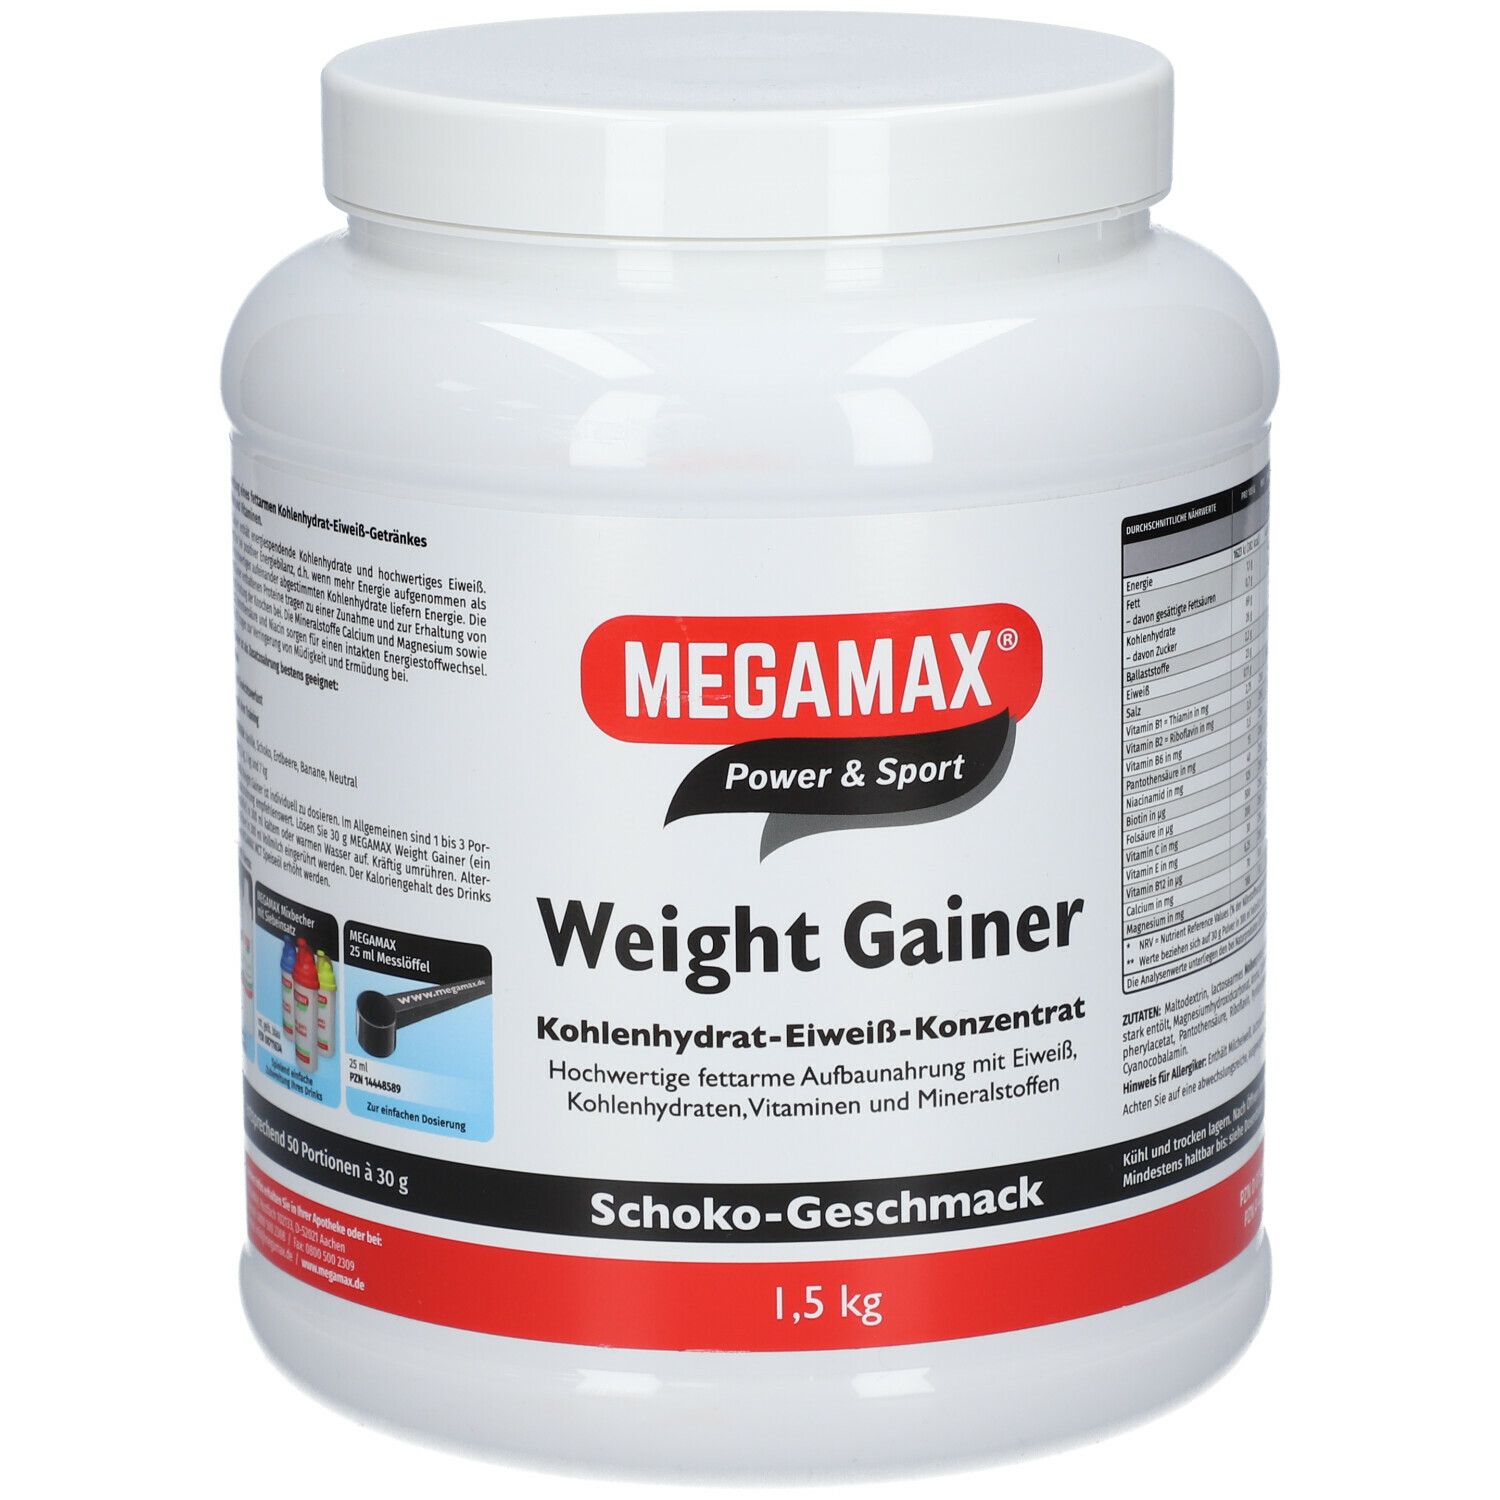 MEGAMAX® Power & Sport Weight Gainer Kohlenhydrat-Eiweiß-Konzentrat Schoko-Geschmack